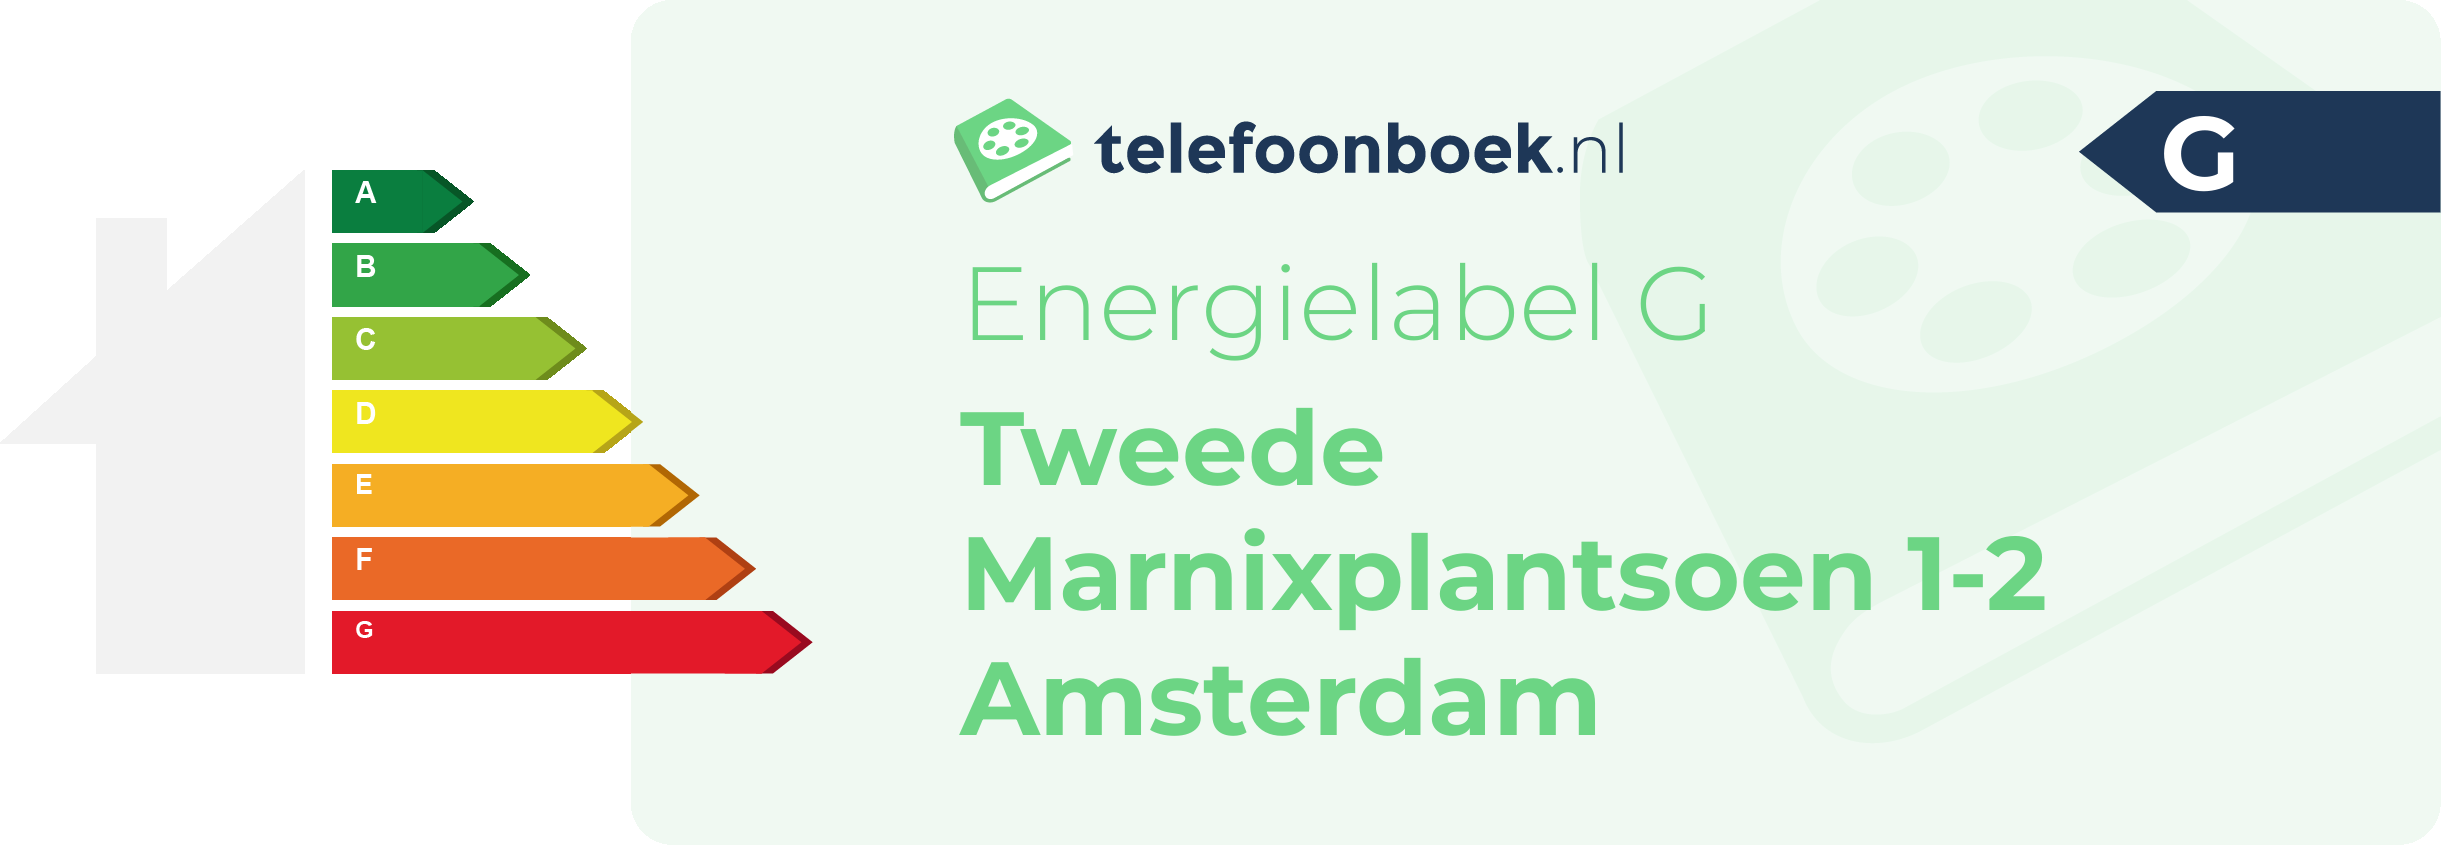 Energielabel Tweede Marnixplantsoen 1-2 Amsterdam